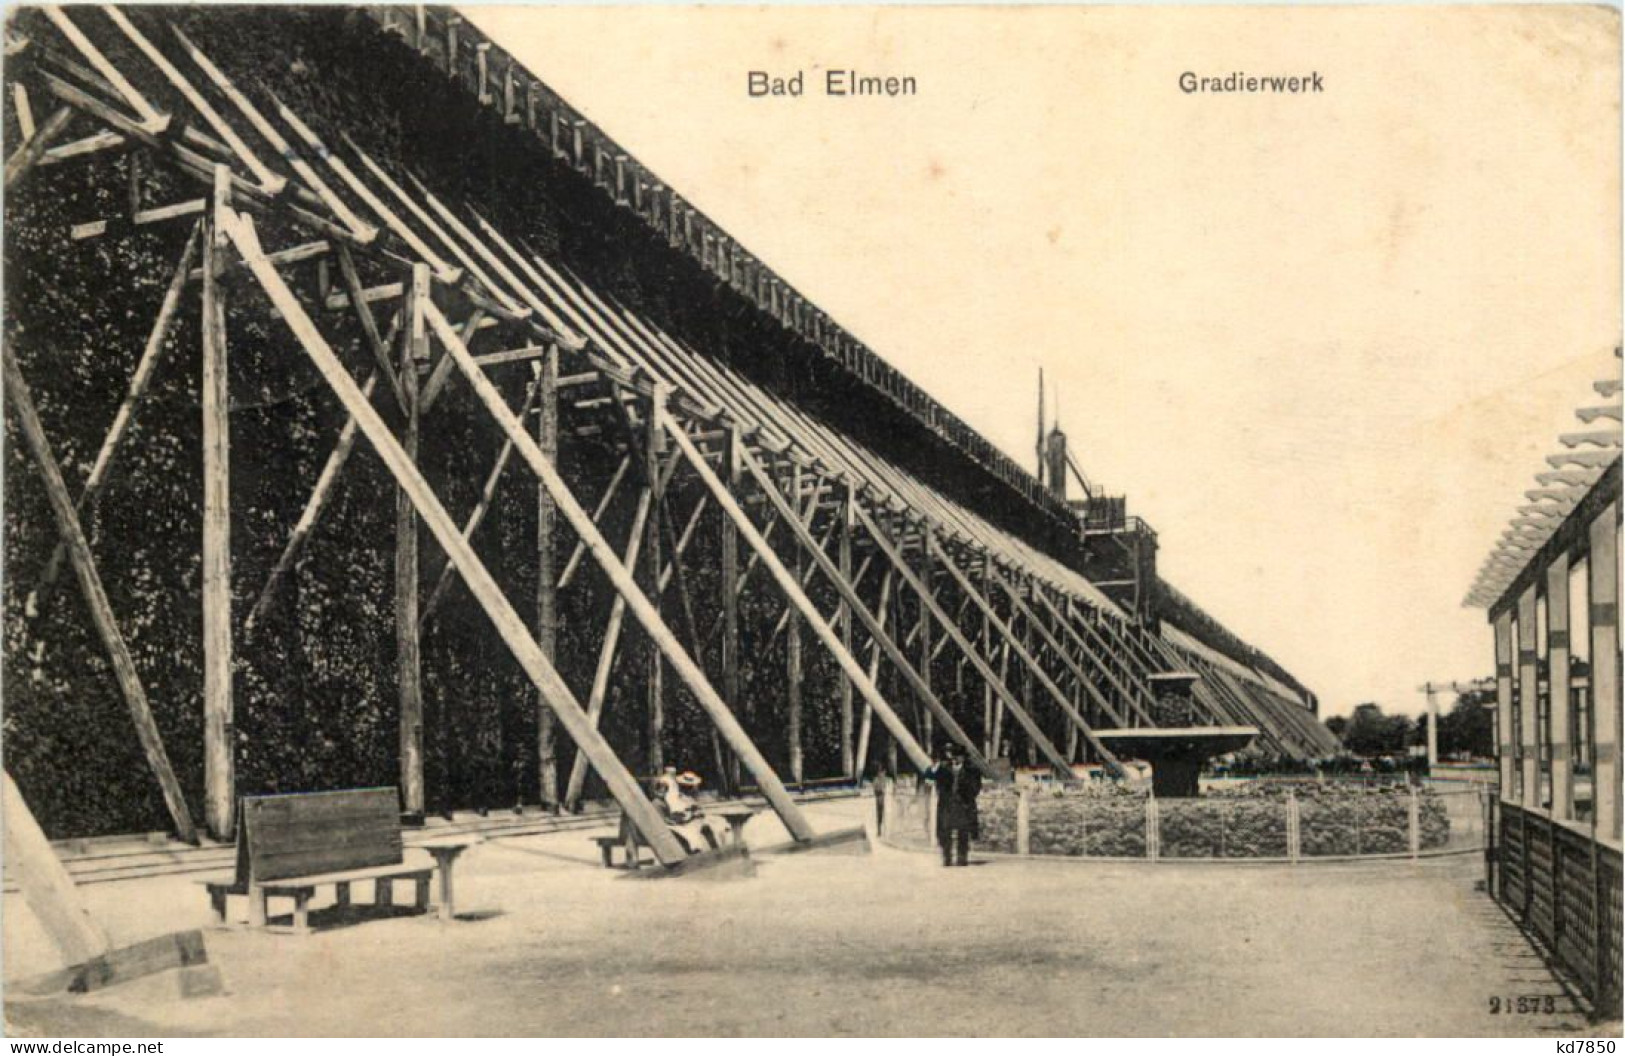 Bad Elmen, Gradierwerk - Schönebeck (Elbe)